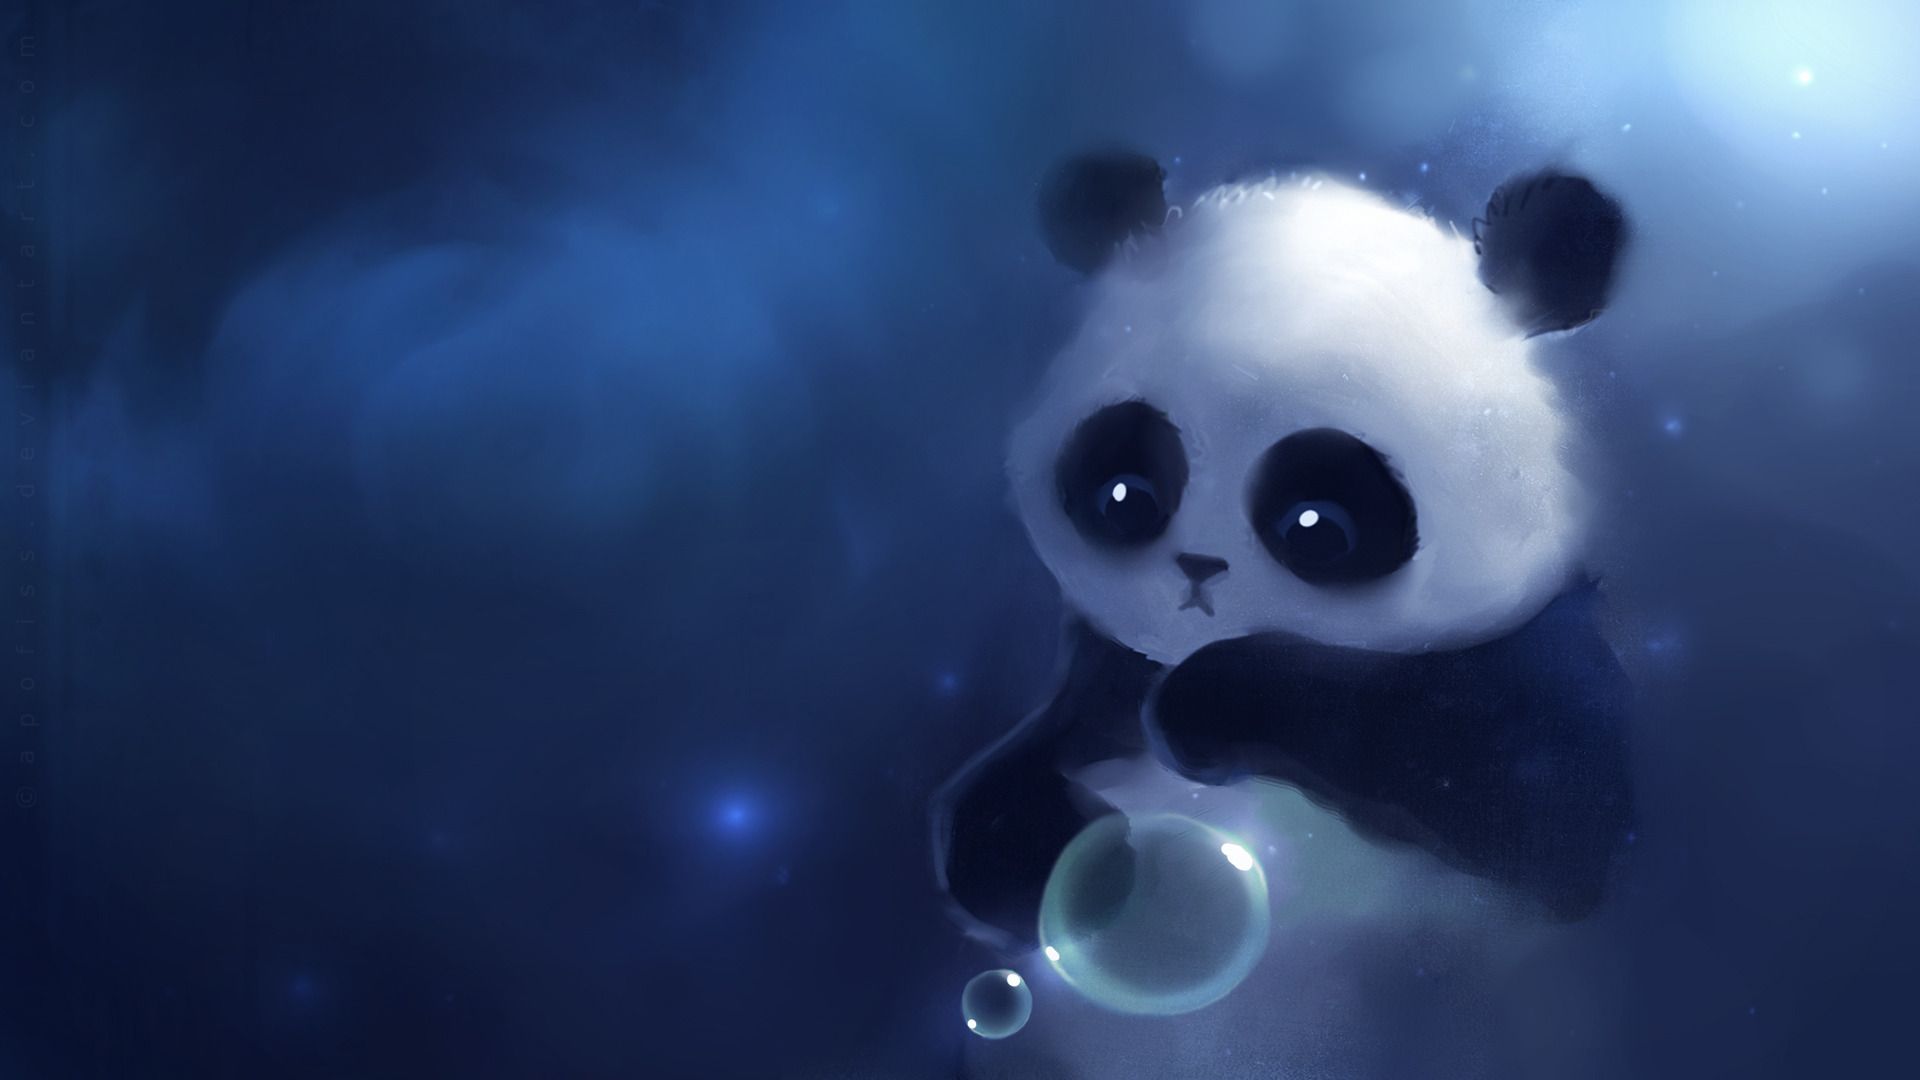 Download Panda